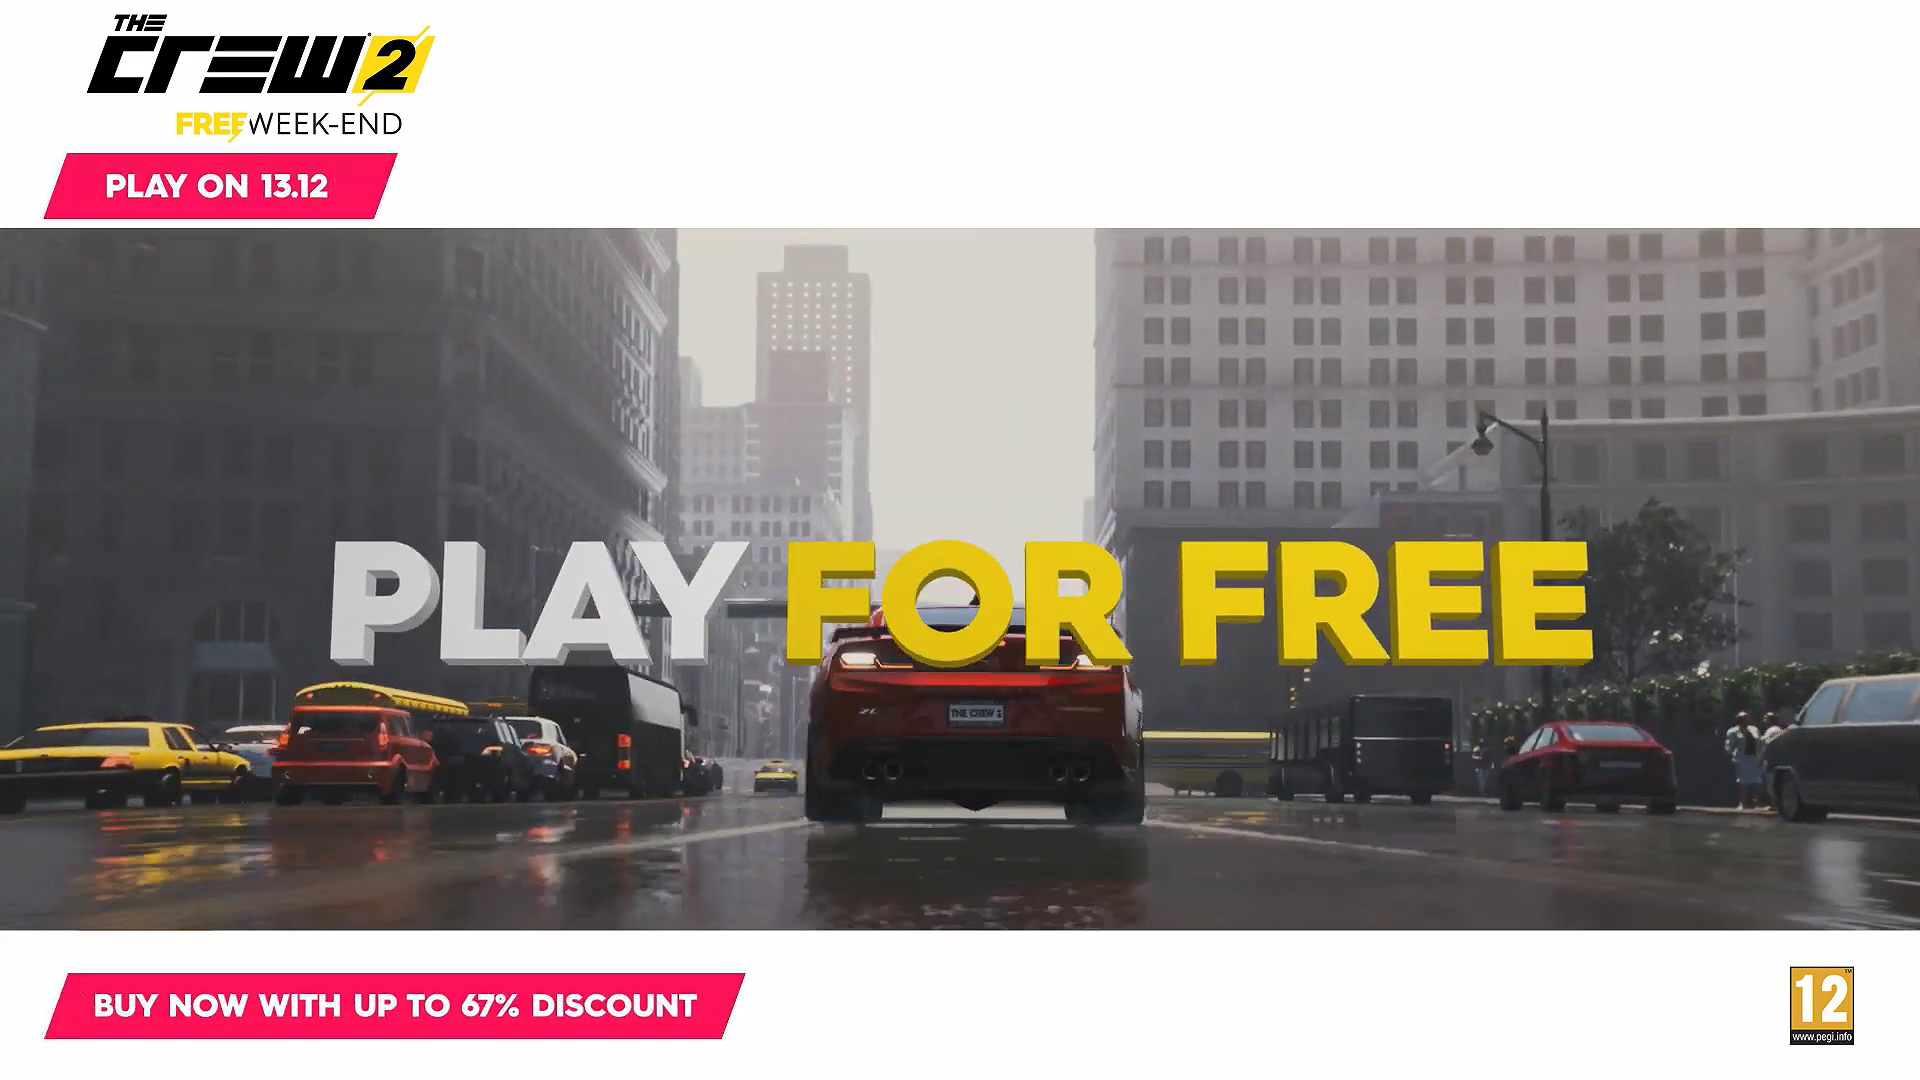 今天下午四点育碧开始提供《飙酷车神2》免费玩